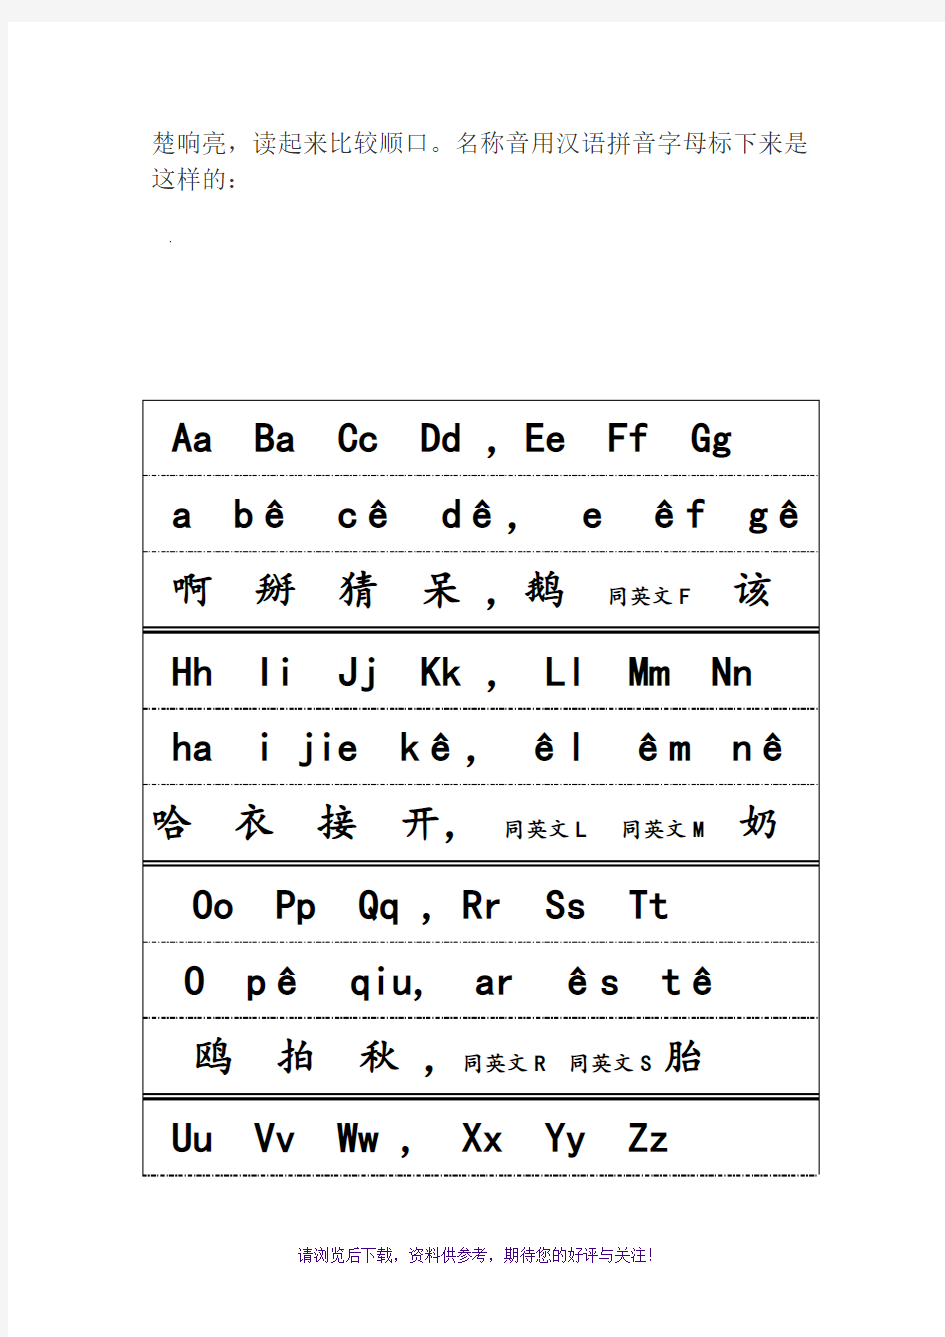 汉语拼音字母表的正确读法与写法(音序表)